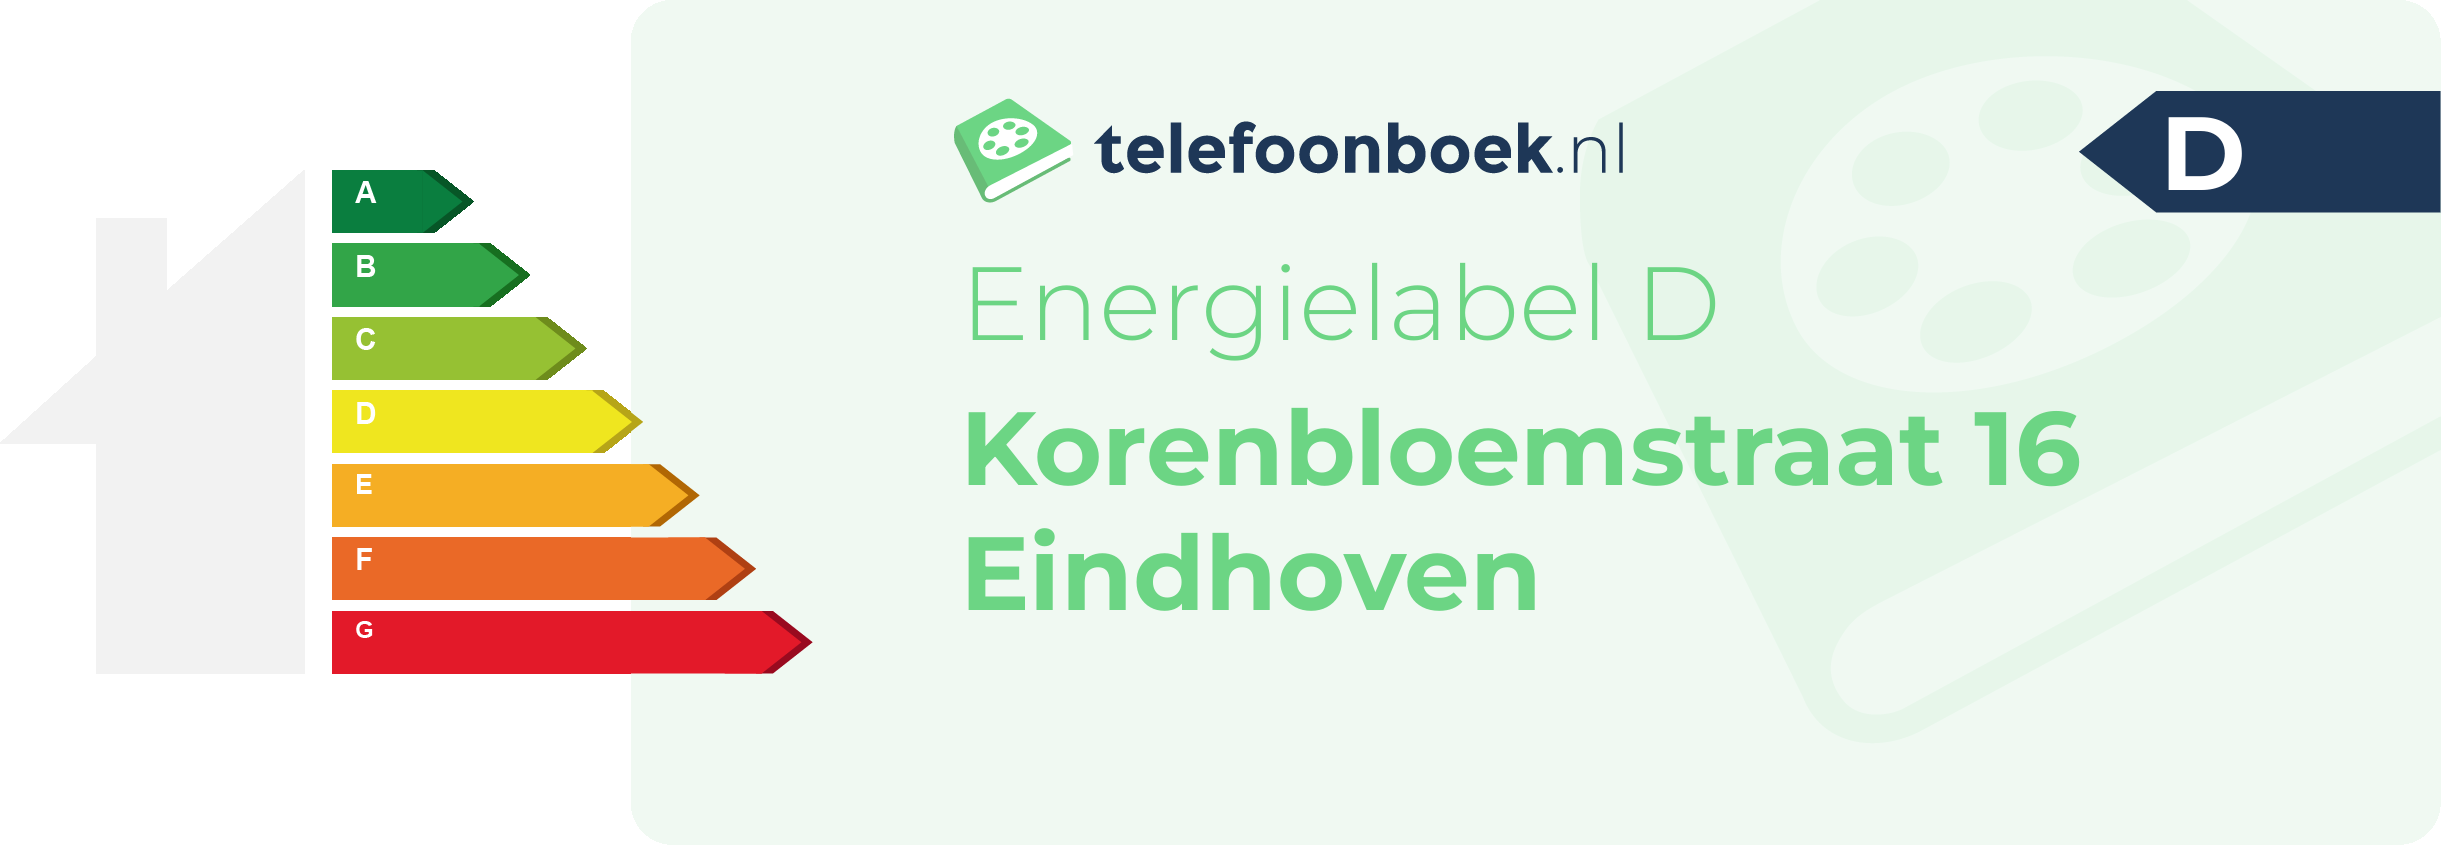 Energielabel Korenbloemstraat 16 Eindhoven